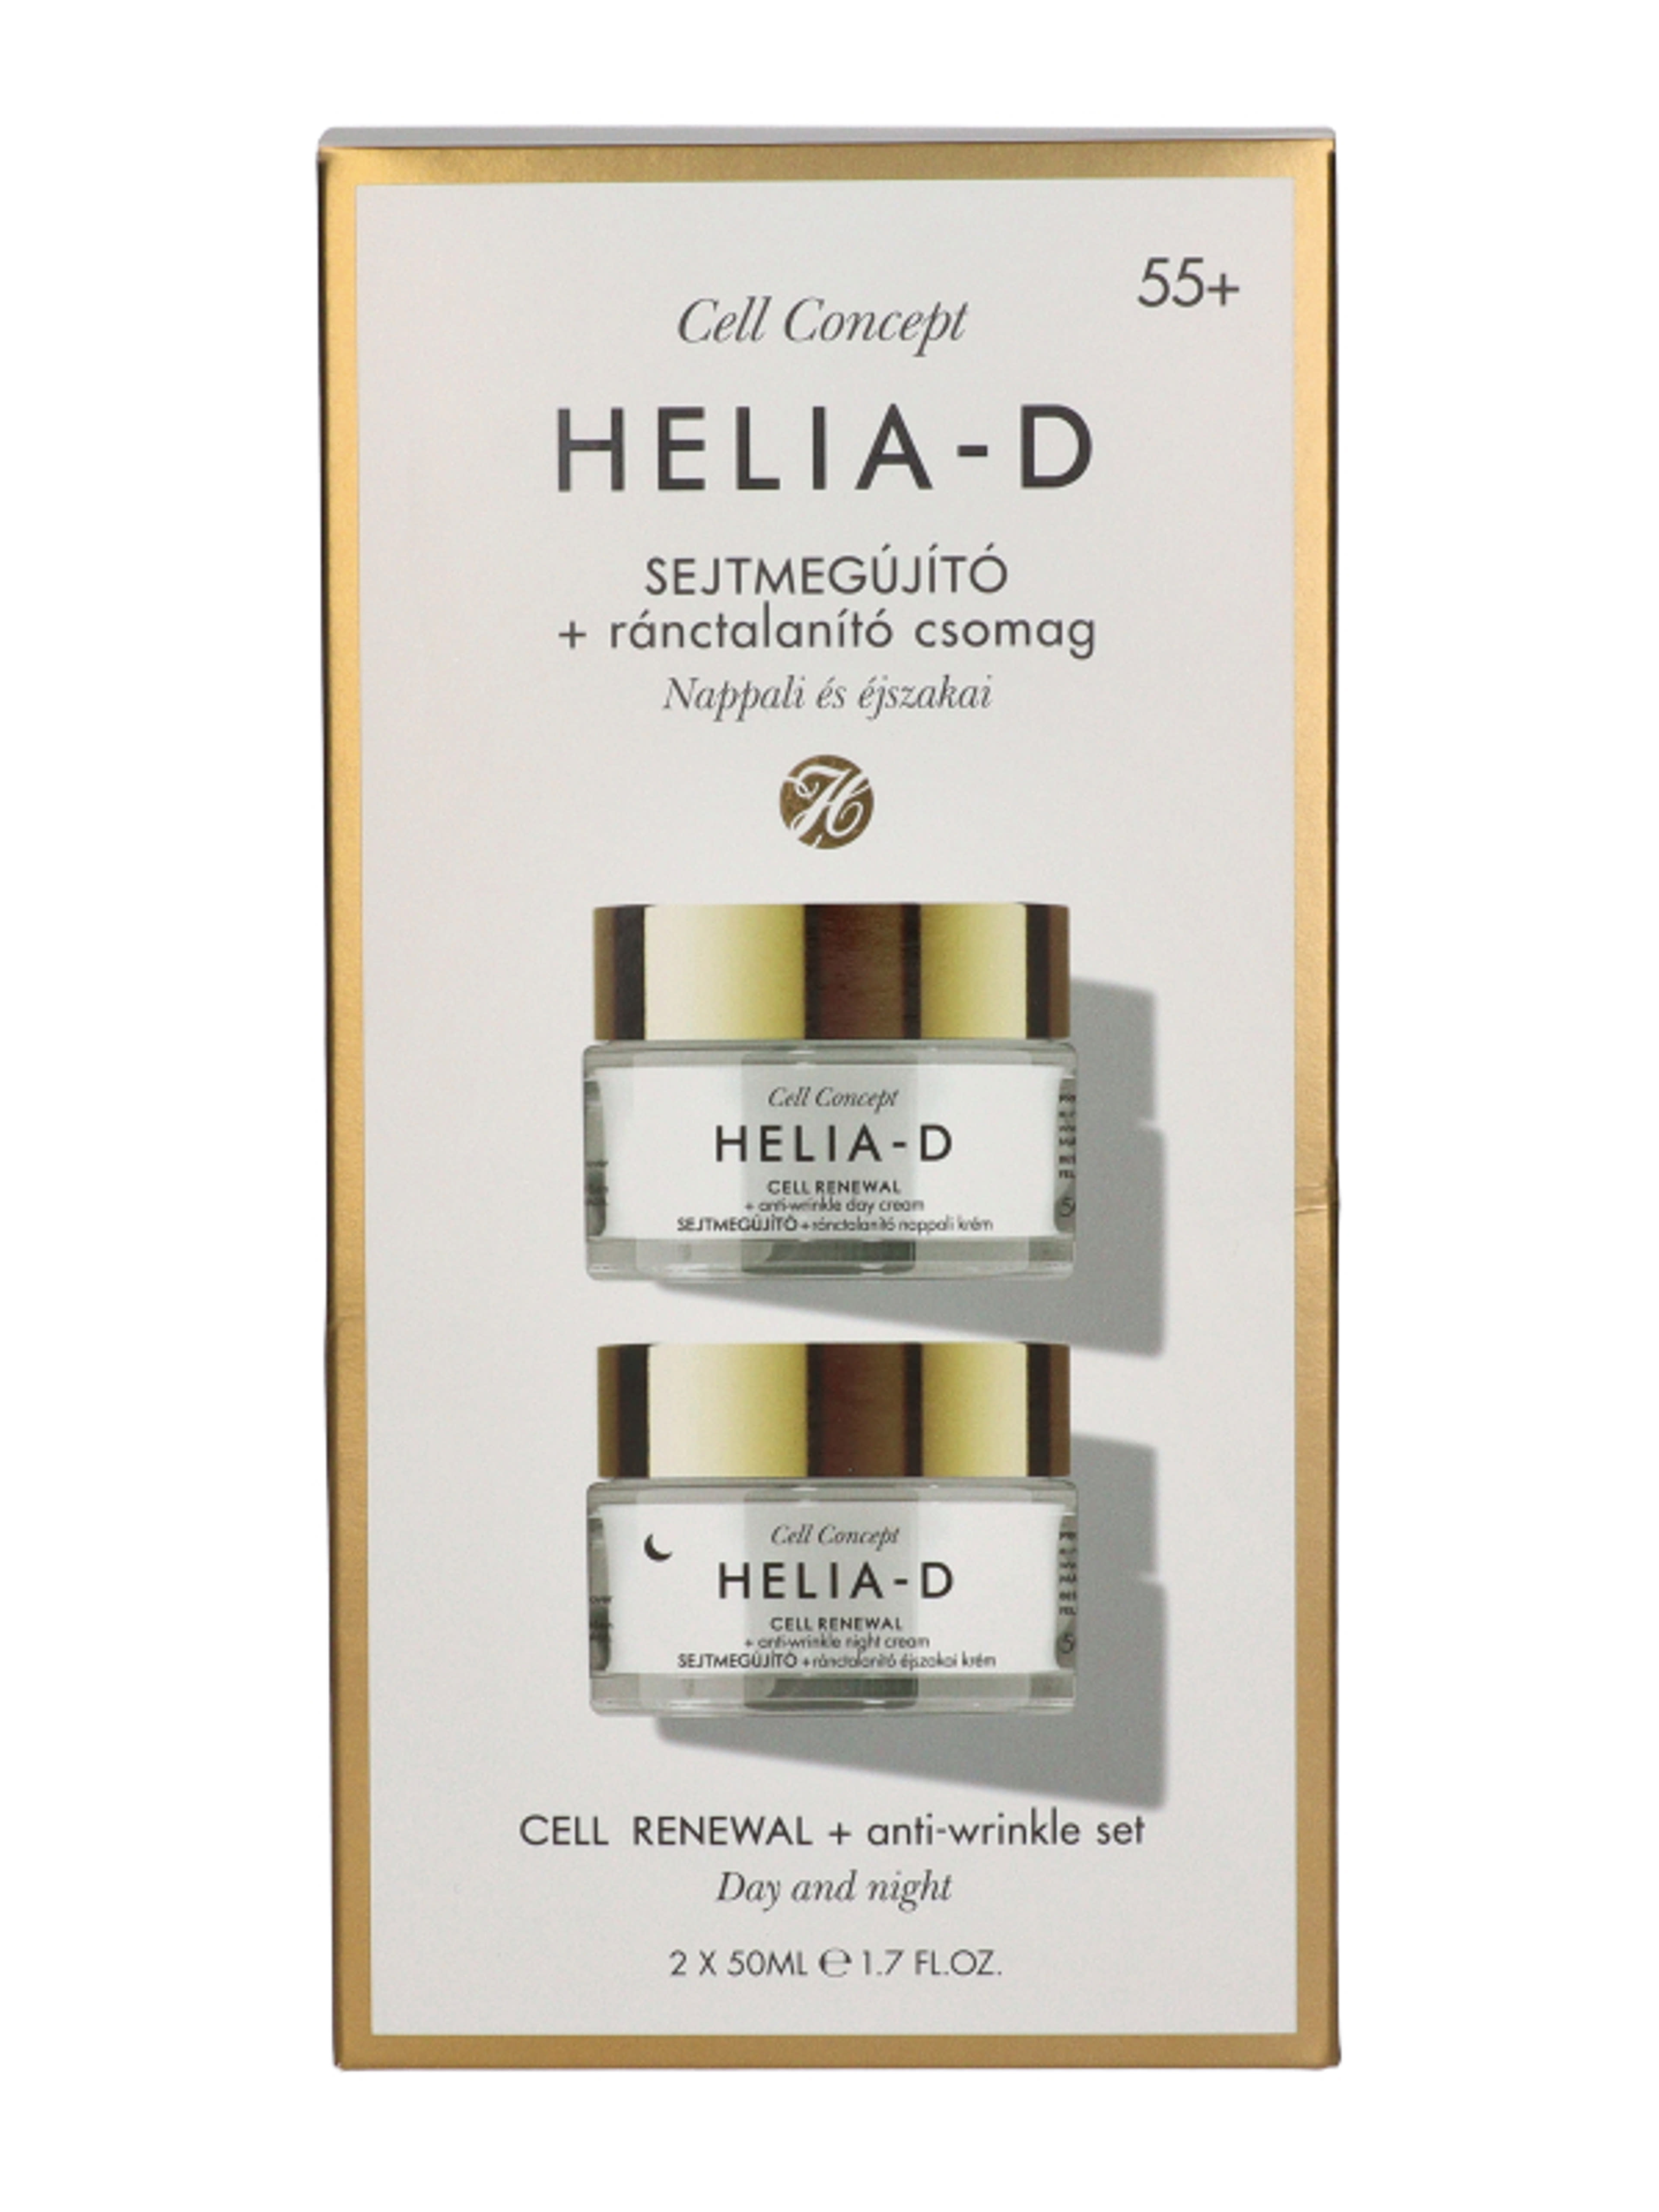 Helia-D Cell Concept sejtmegújító ránctalanító csomag 55+ 2x50 ml - 100 ml-2